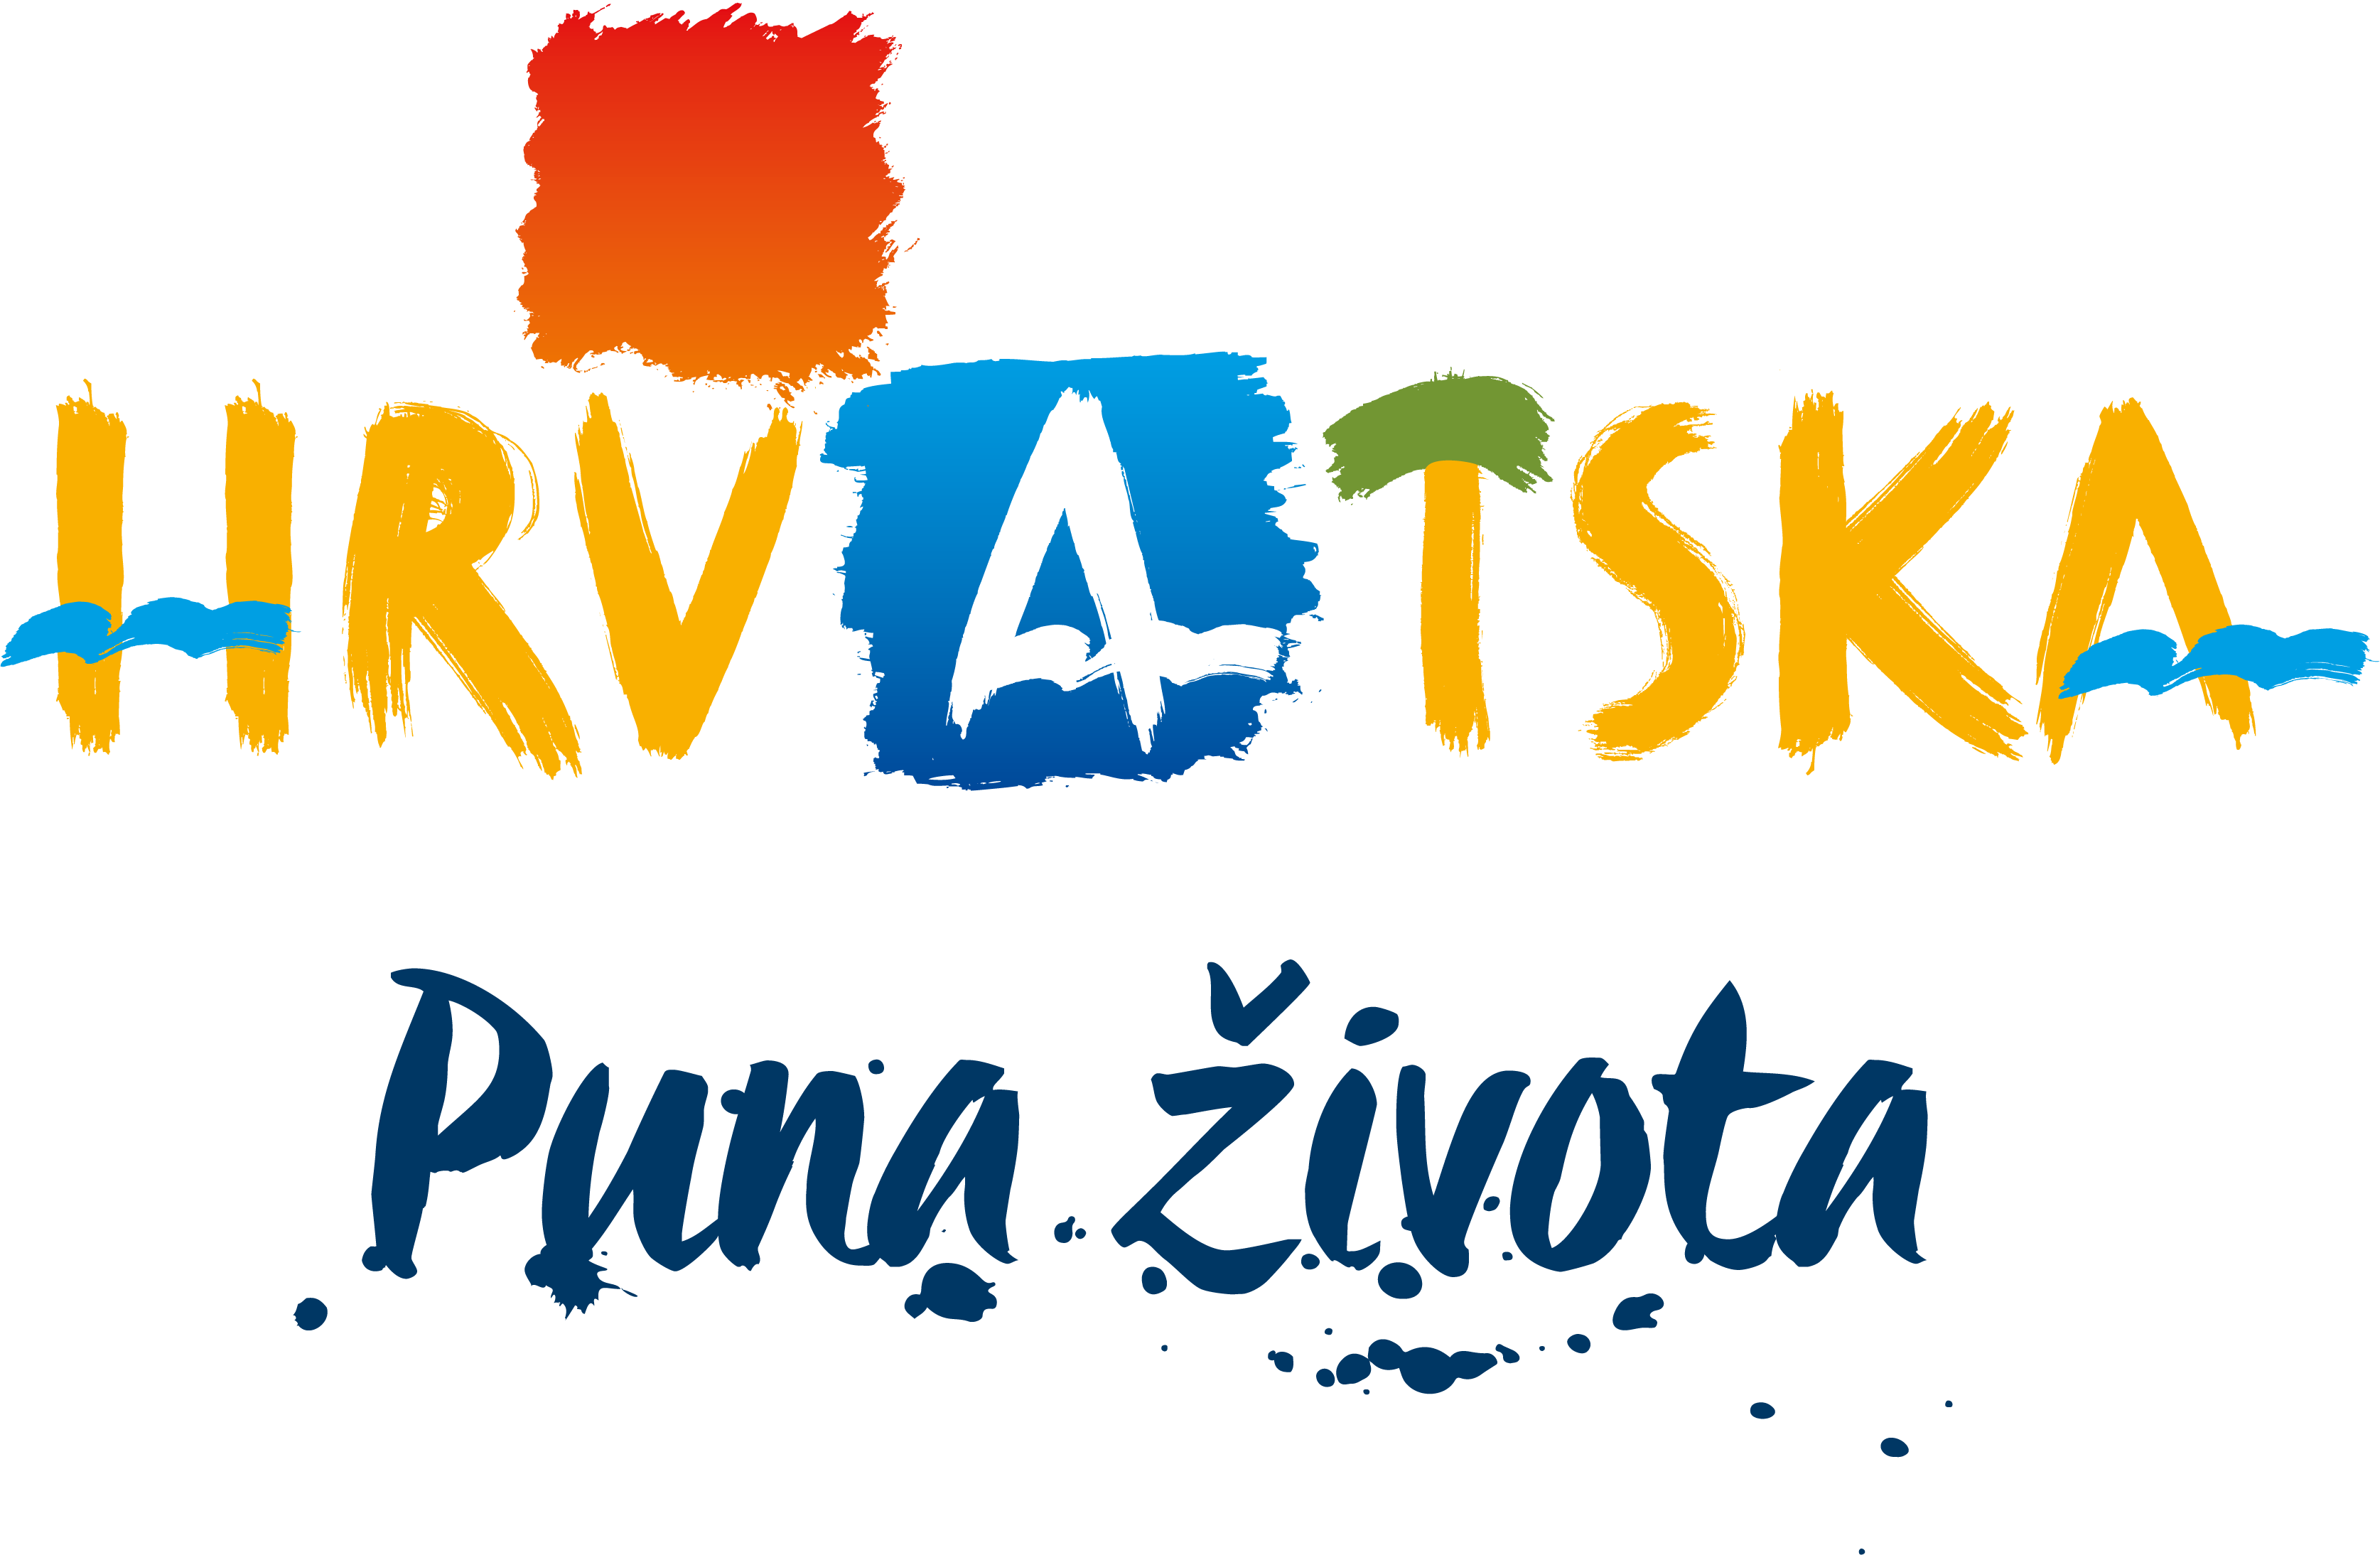 HTZ 2016 logo slogan bez splasha hrvatski rgb